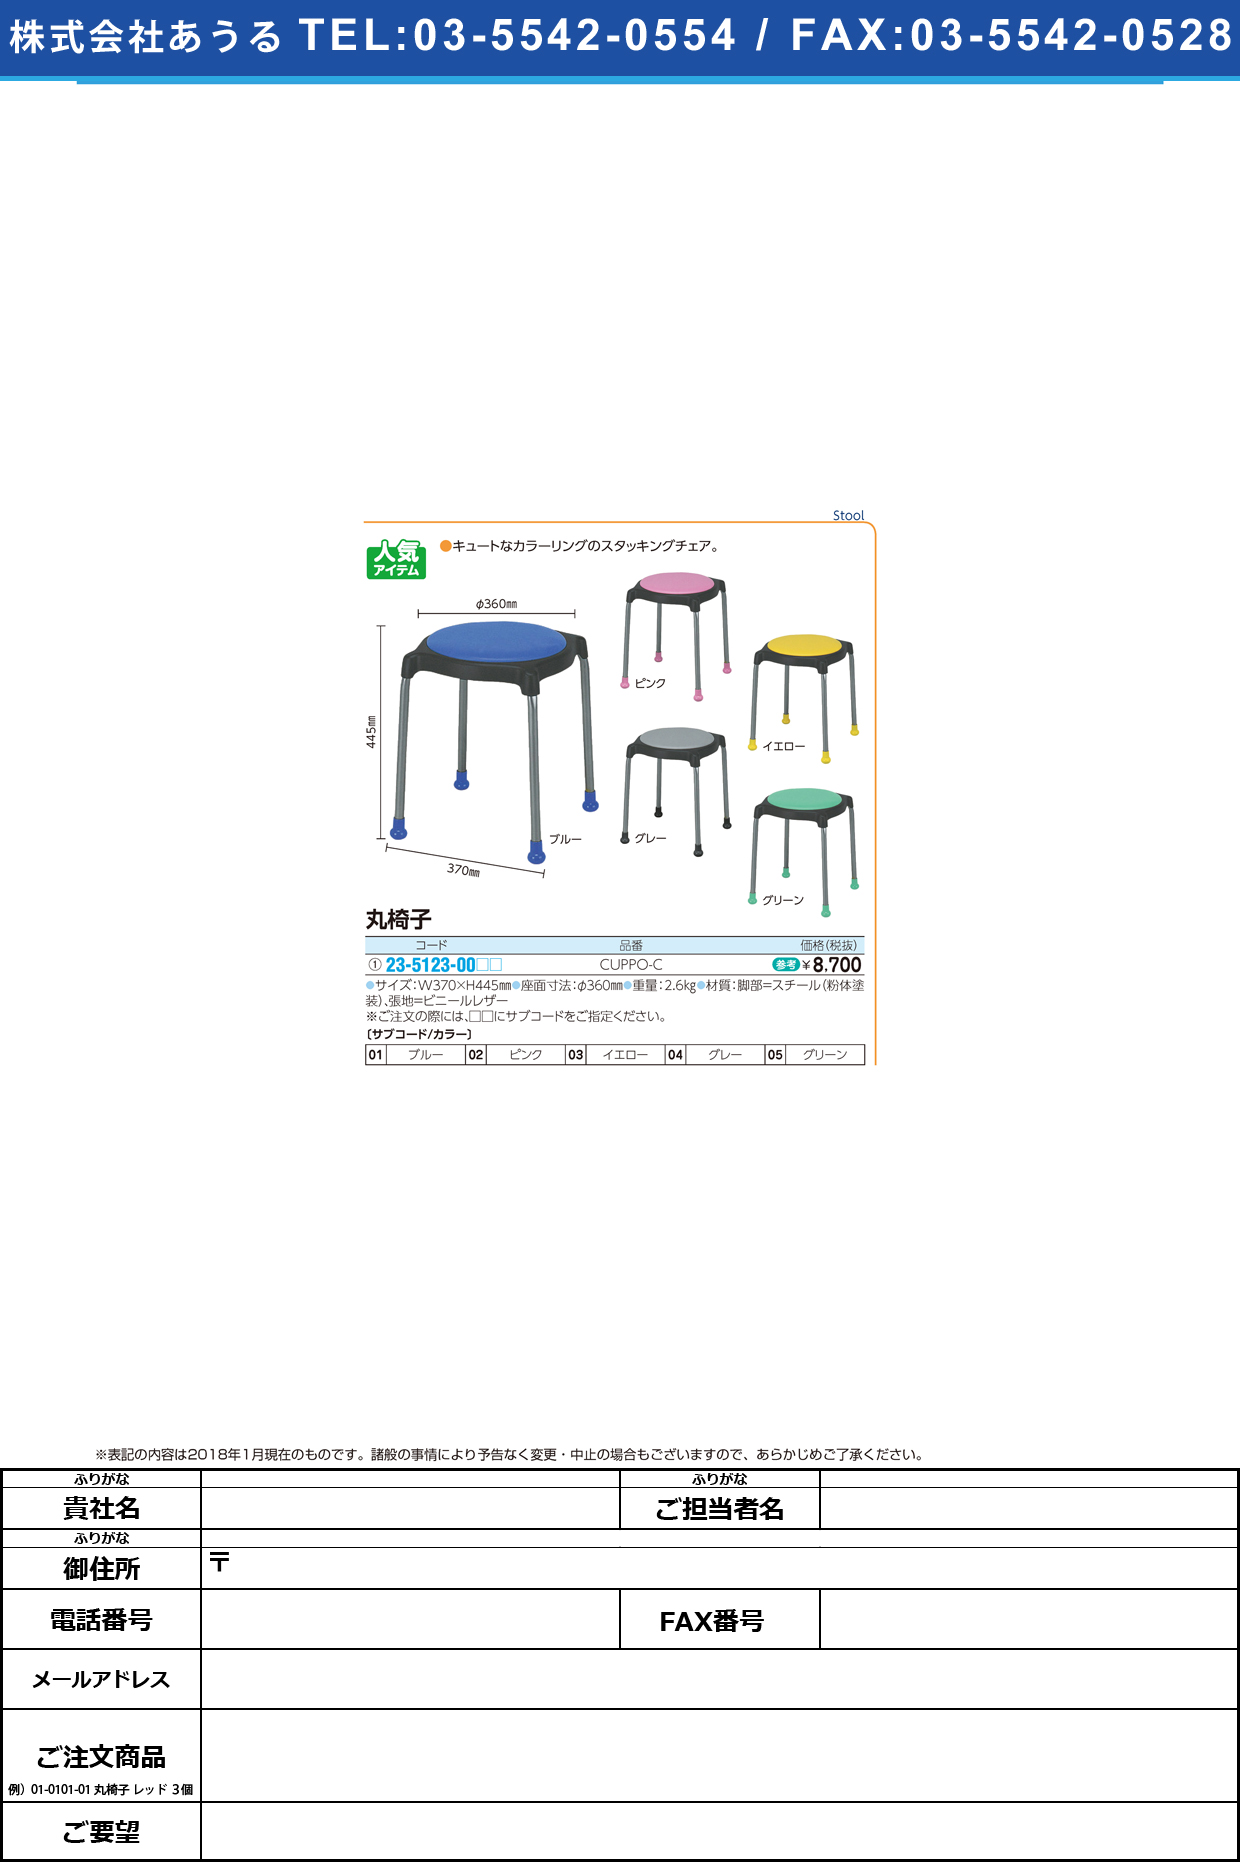 (23-5123-00)丸椅子 CUPPO-C(ﾚｻﾞｰ) ﾏﾙｲｽ ブルー【1台単位】【2018年カタログ商品】